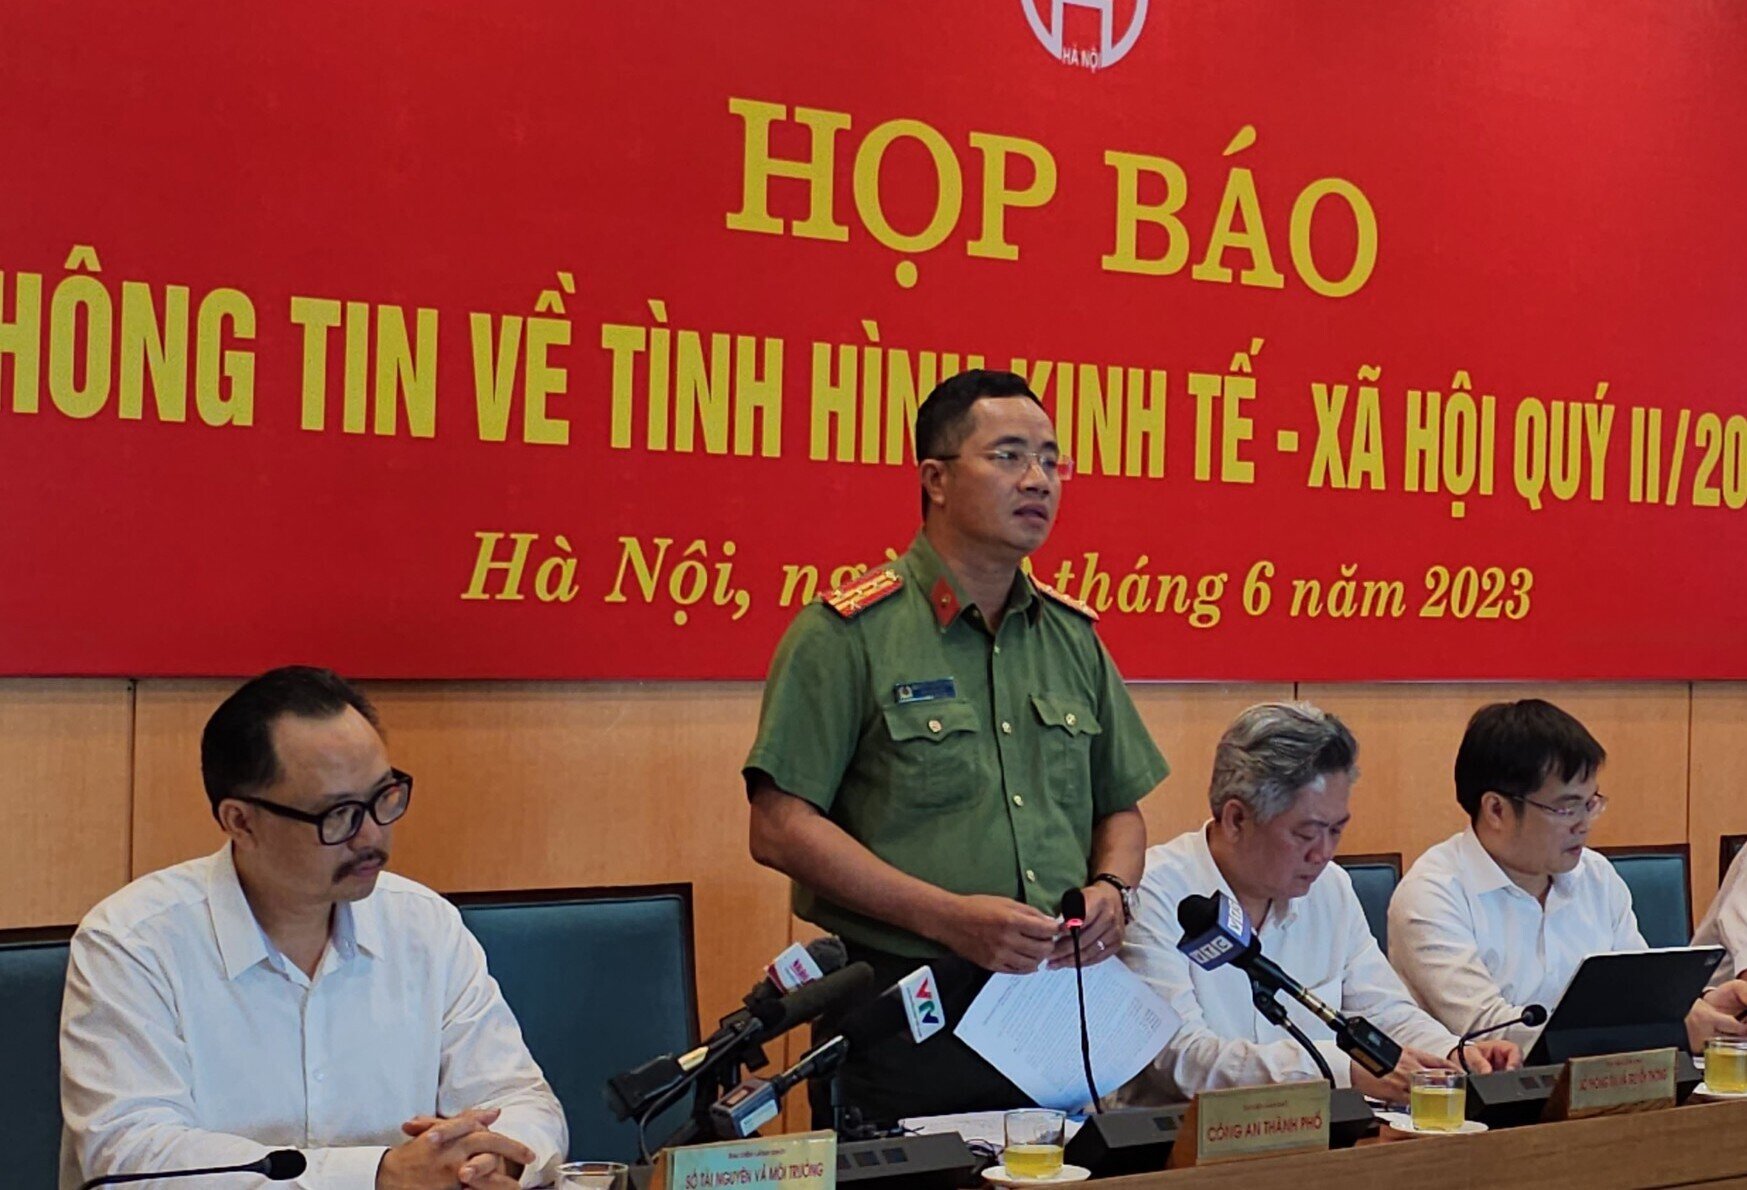 Đại tá Nguyễn Thành Long, Phó giám đốc Công an TP Hà Nội thông tin tại họp báo.